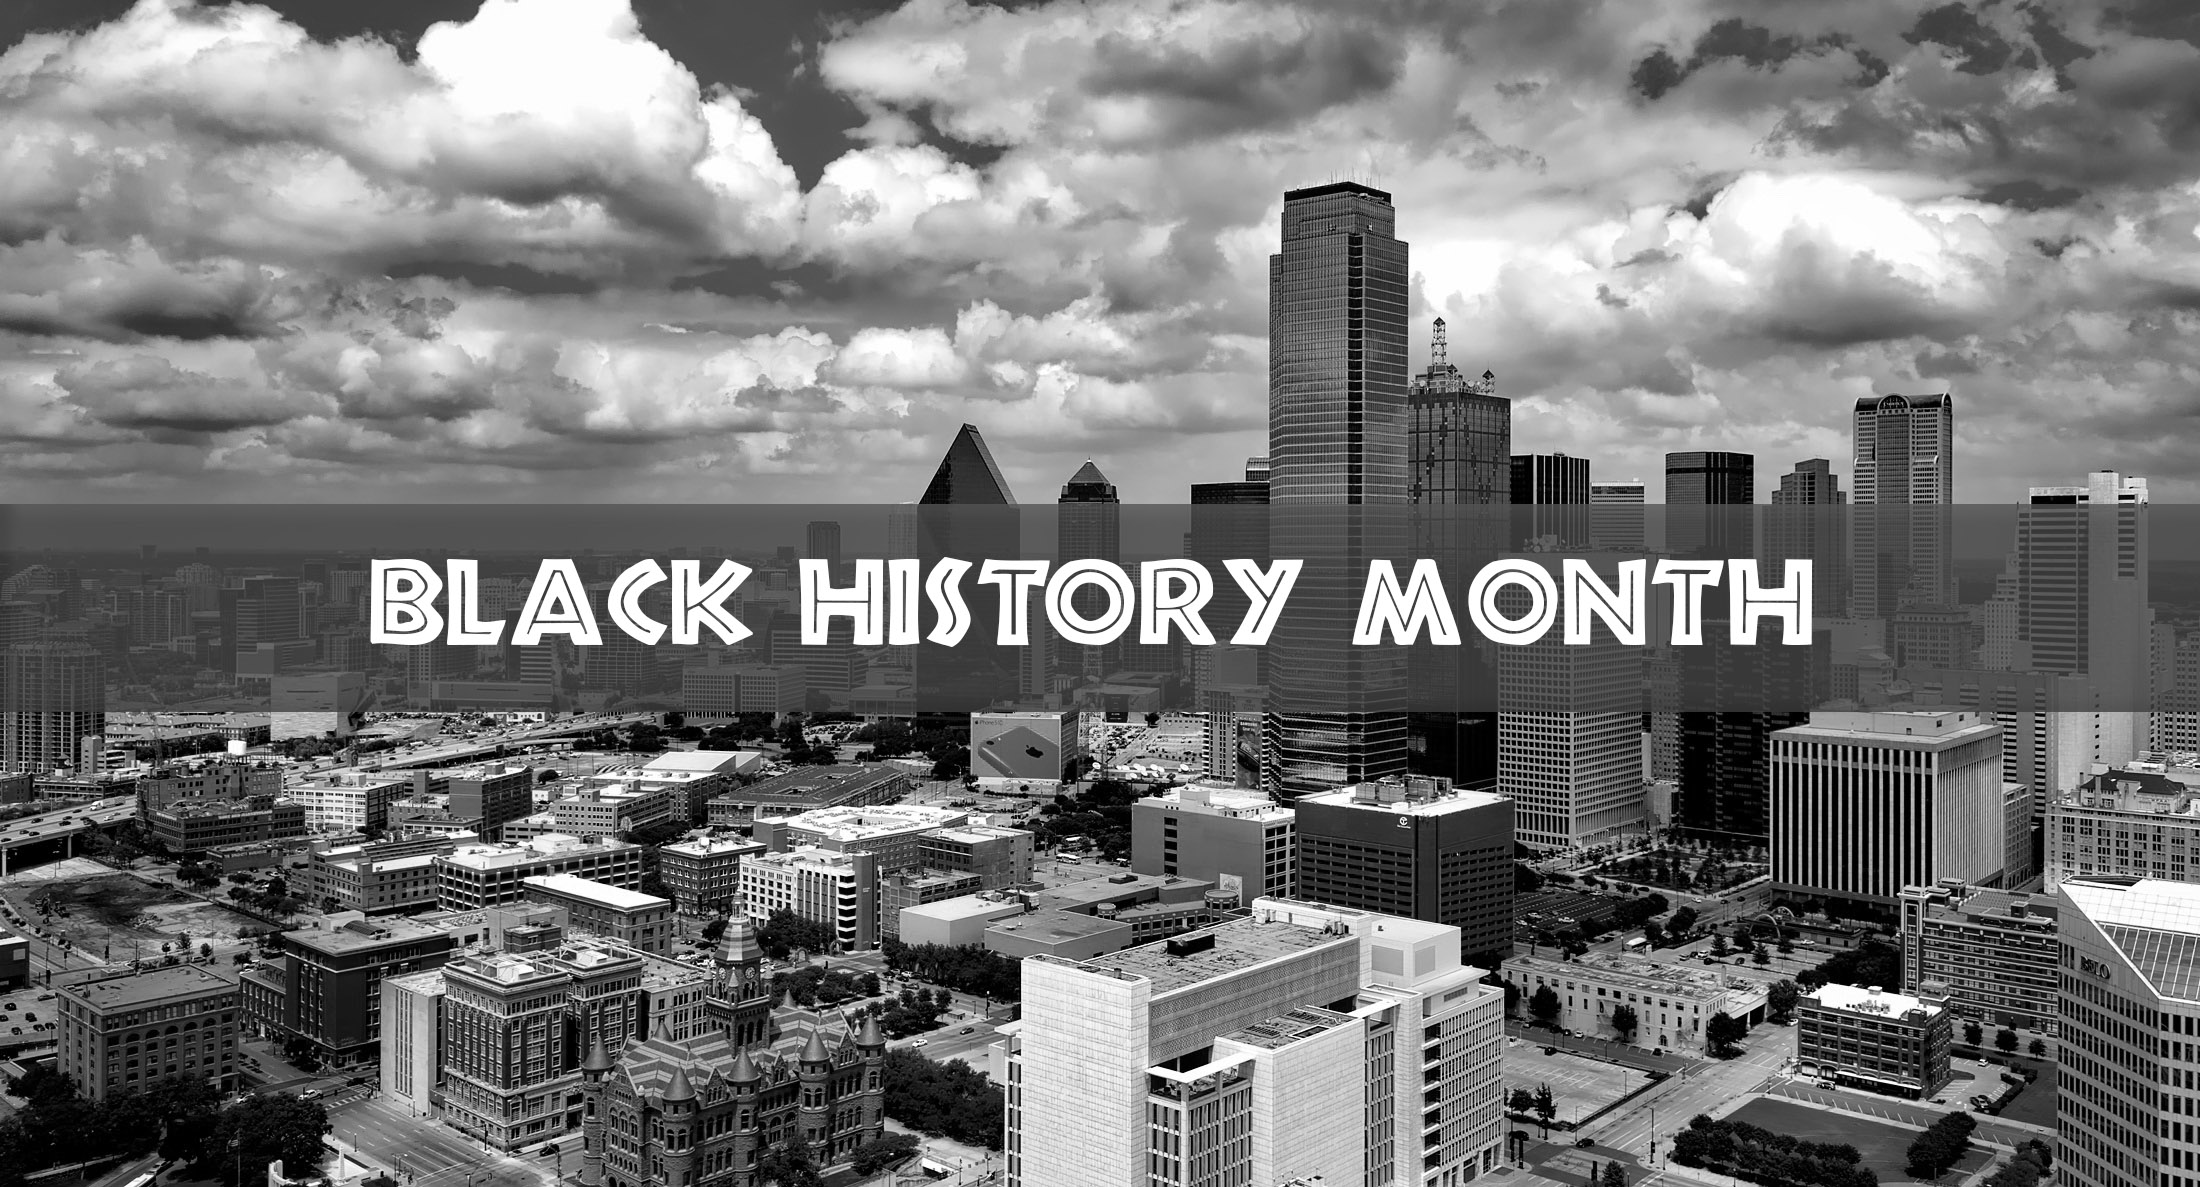 Black History month events in Dallas Dallas City News